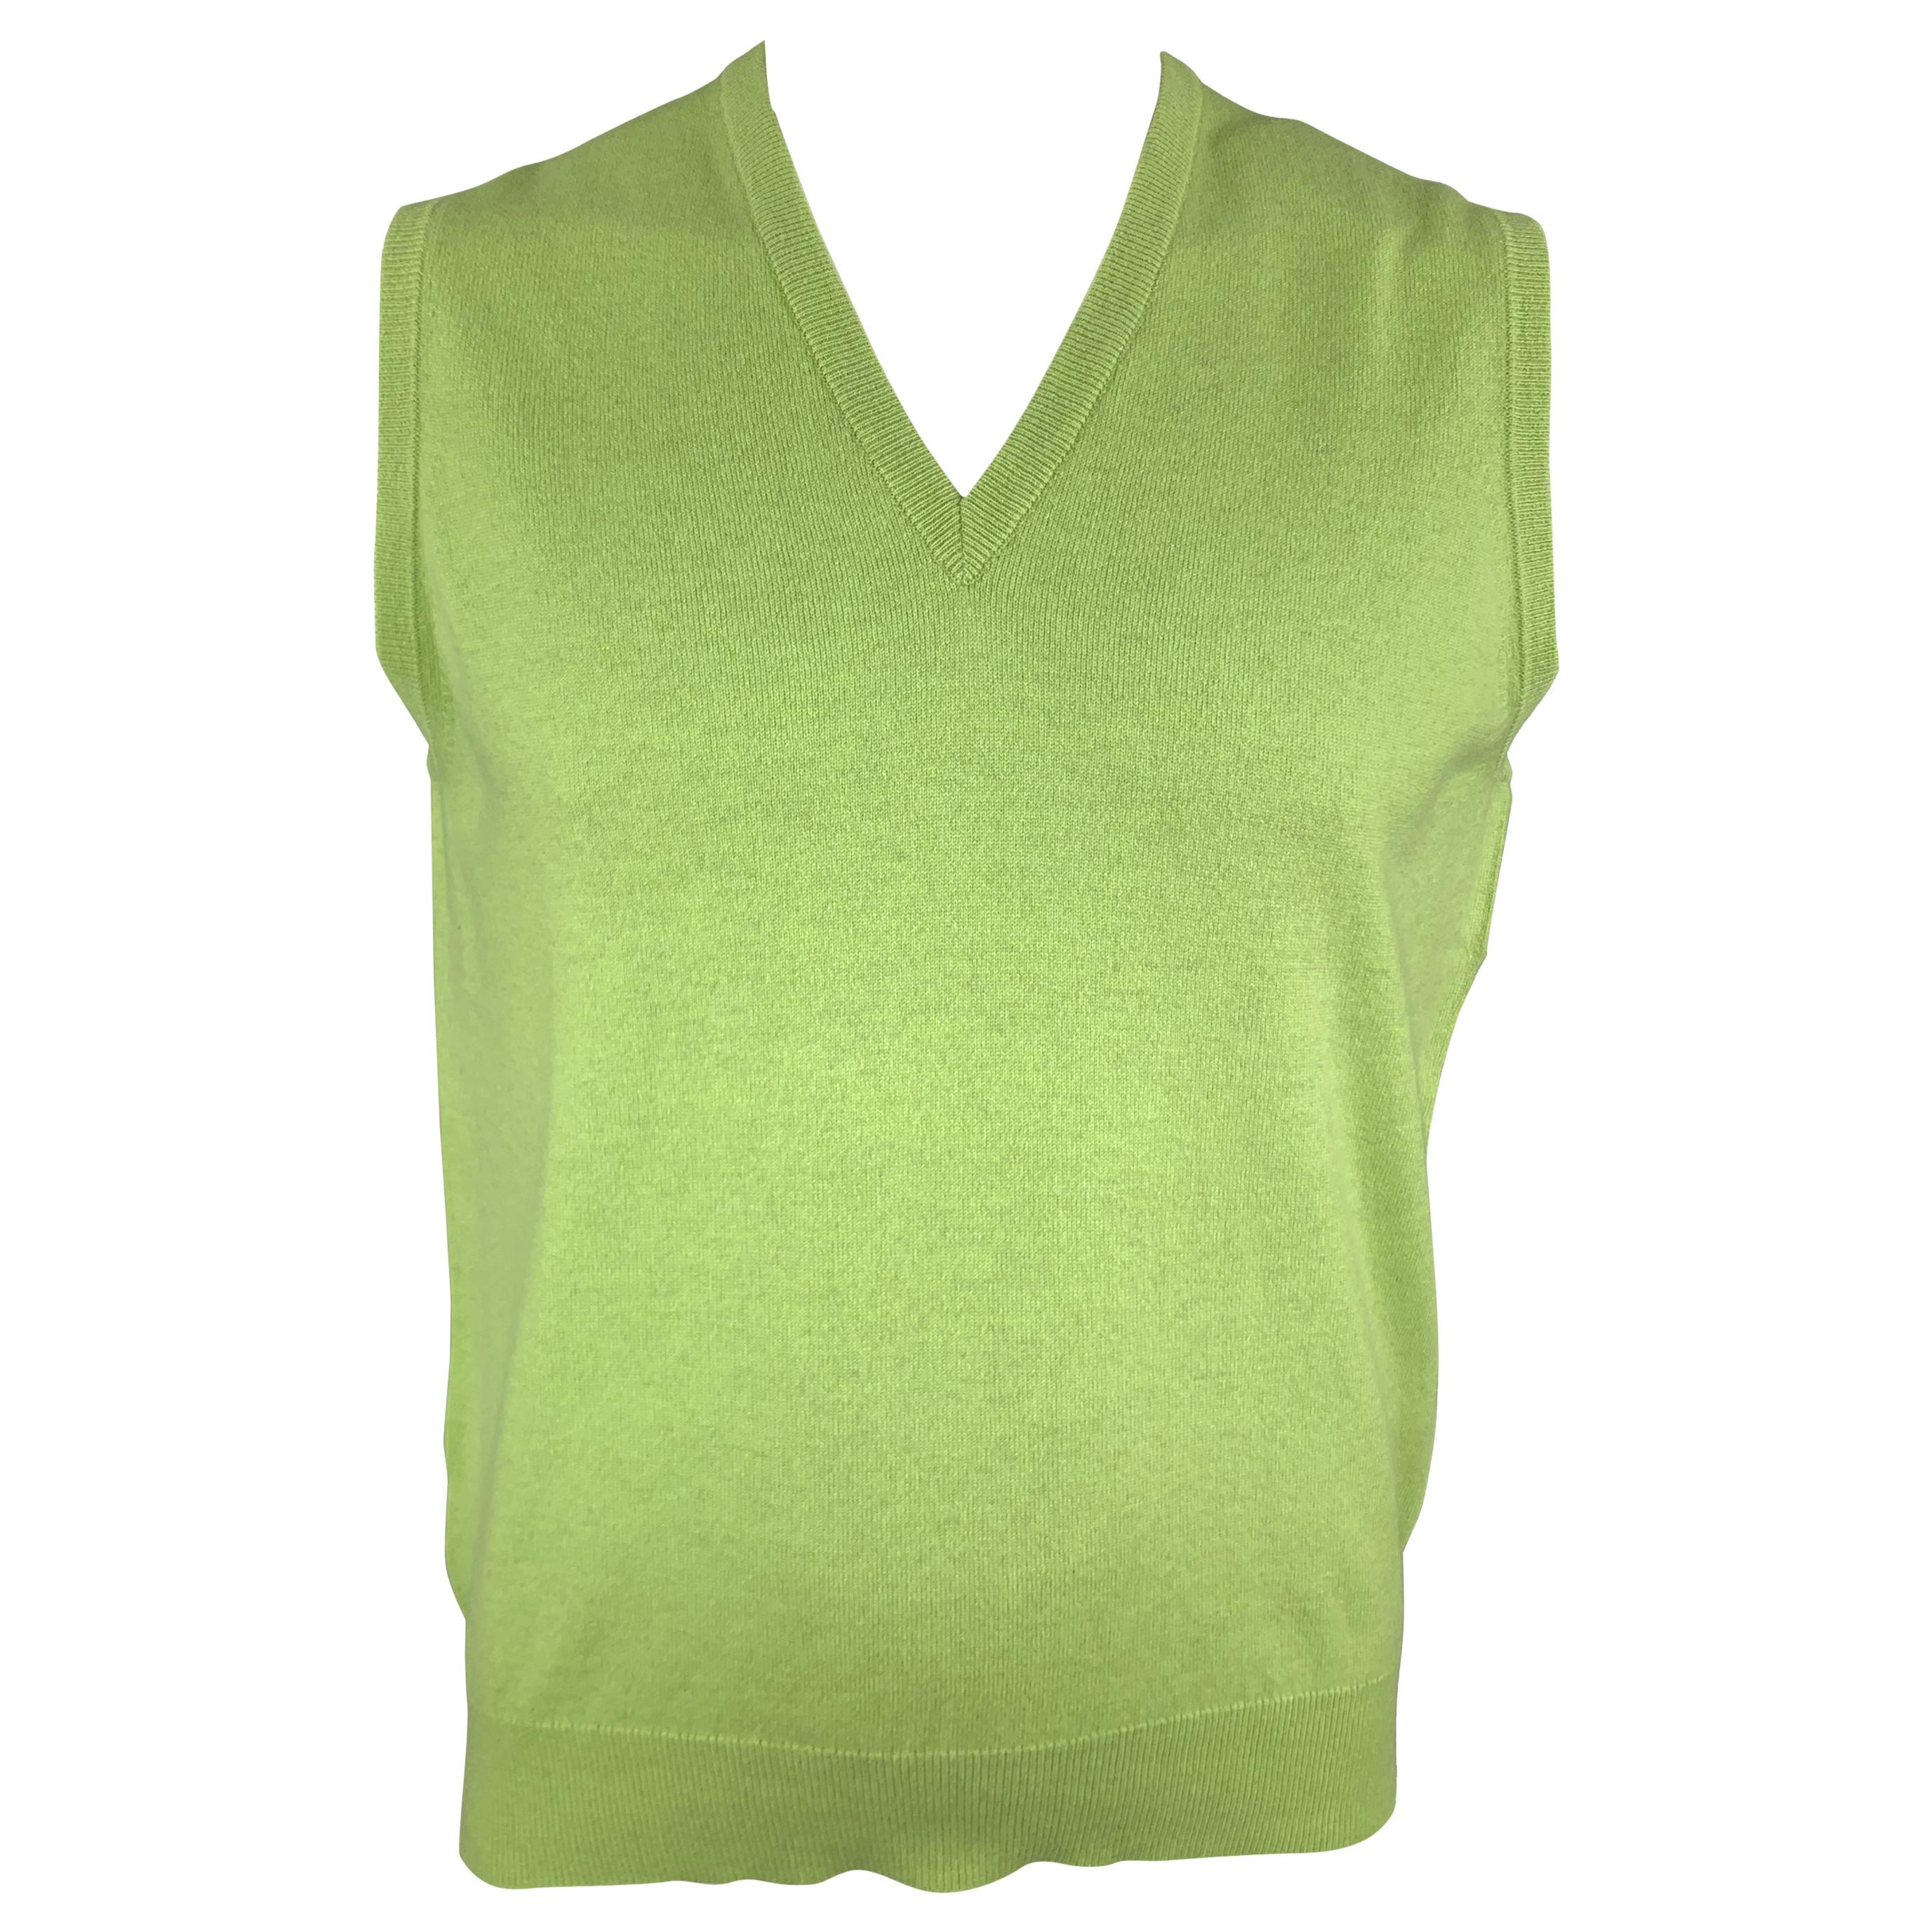 BALLANTYNE Size XL Light Green Cashmere V-Neck Sweater Vest